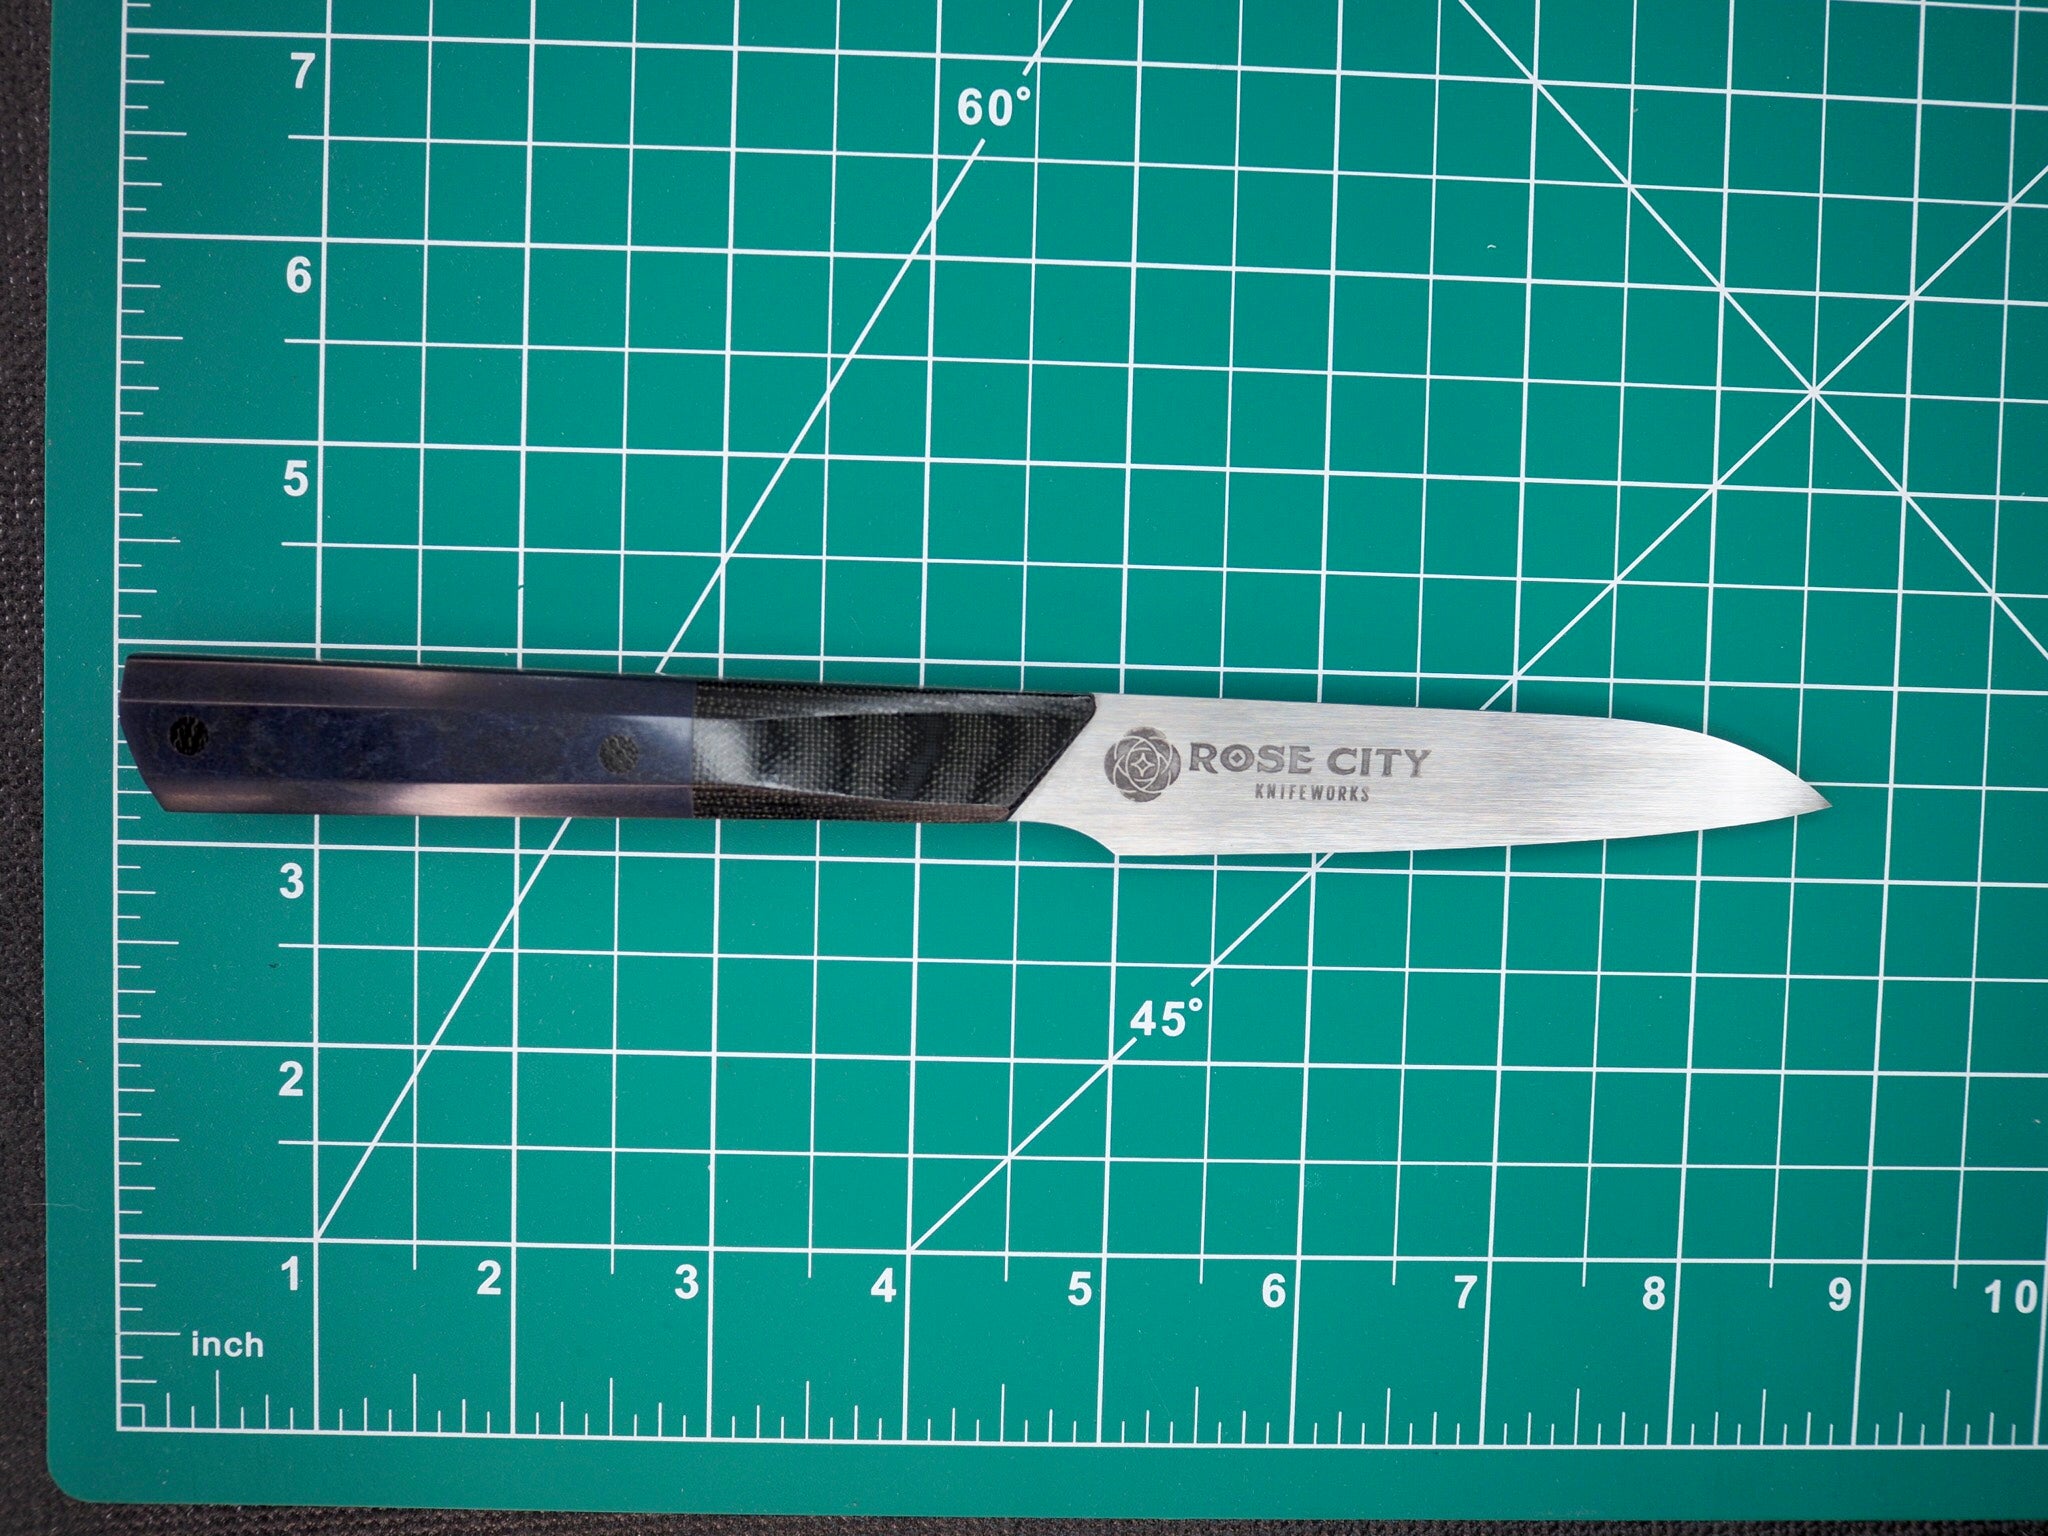 6 Japanese Style Utility Knife